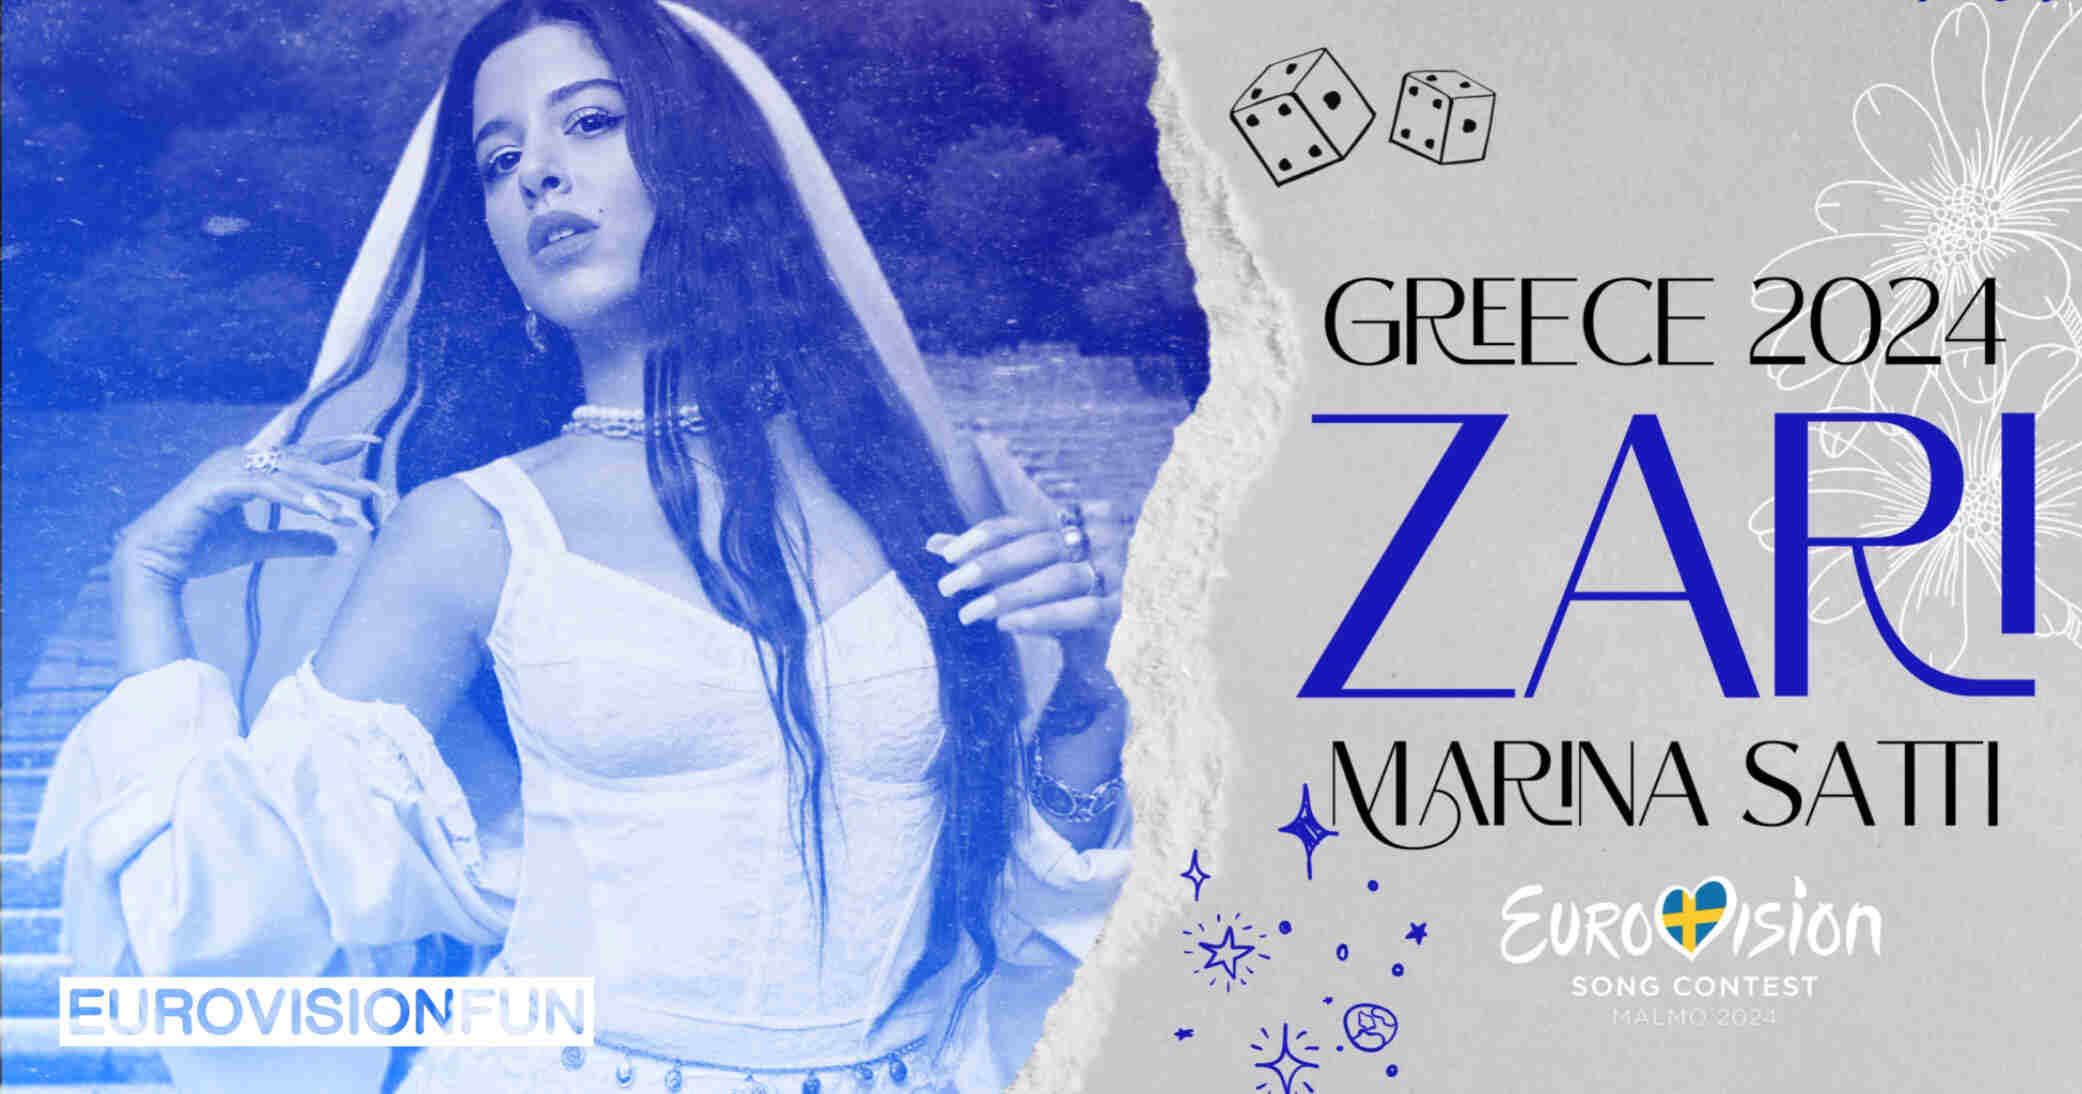 Greece Marina Satti's "ZARI" Released for Eurovision 2024